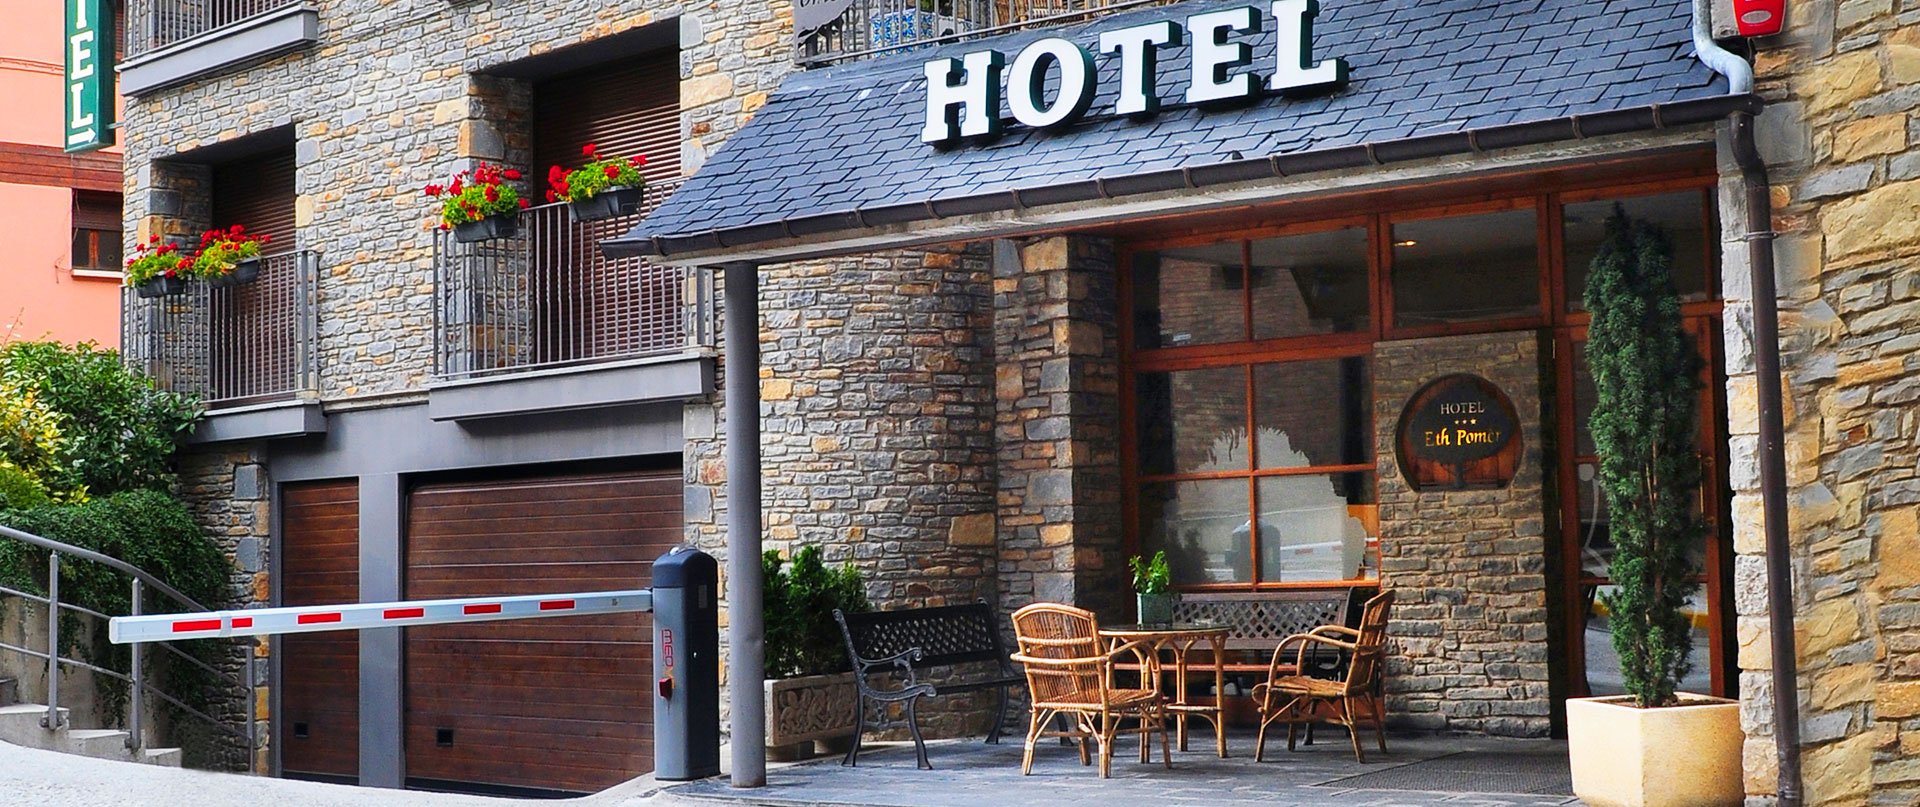 El Valle de Arán tiene hoteles de 3 estrellas muy bien valorados en Booking